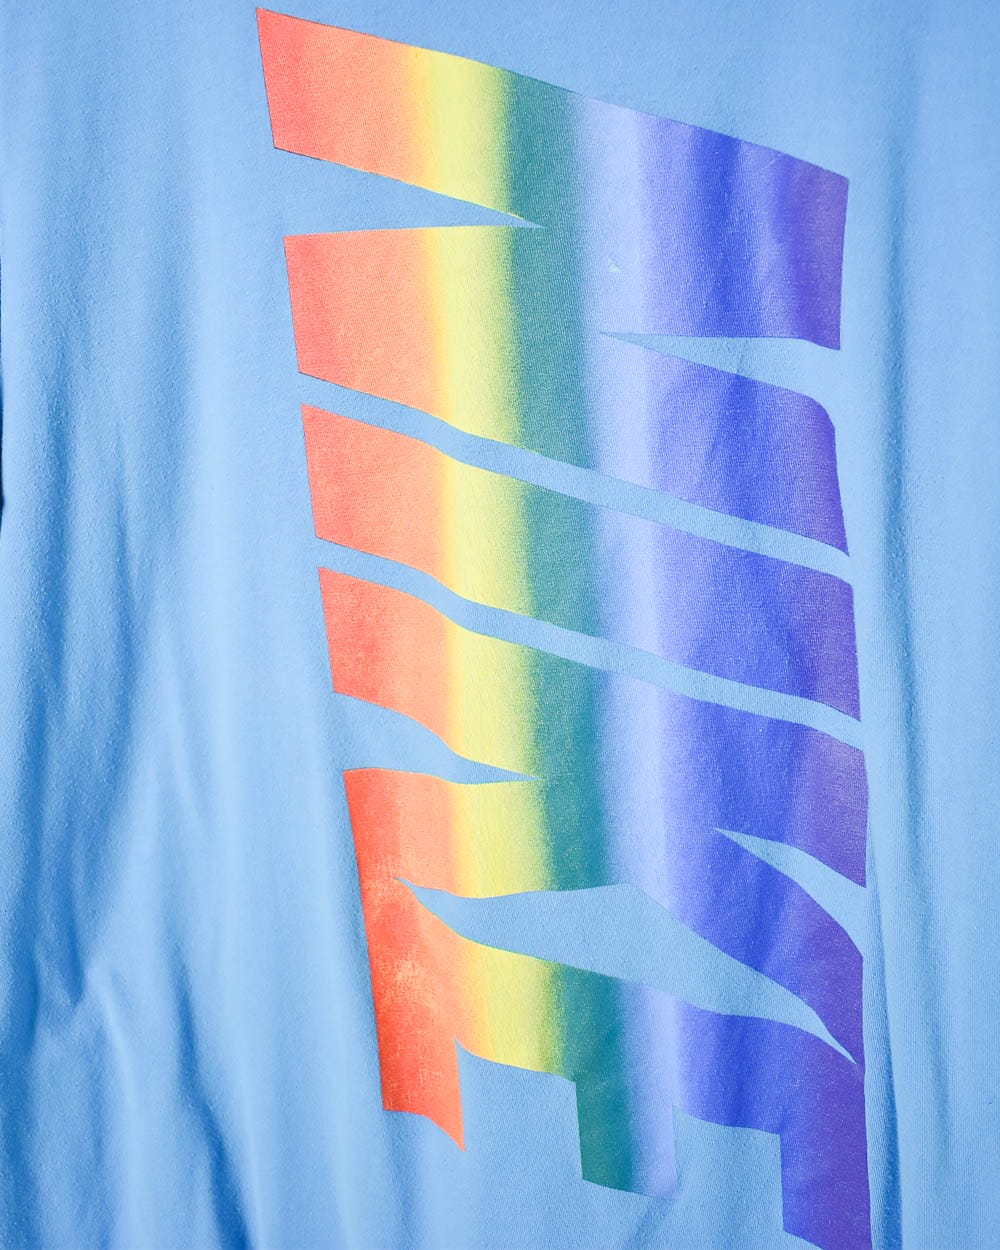 Baby Nike Rainbow T-Shirt - X-Large